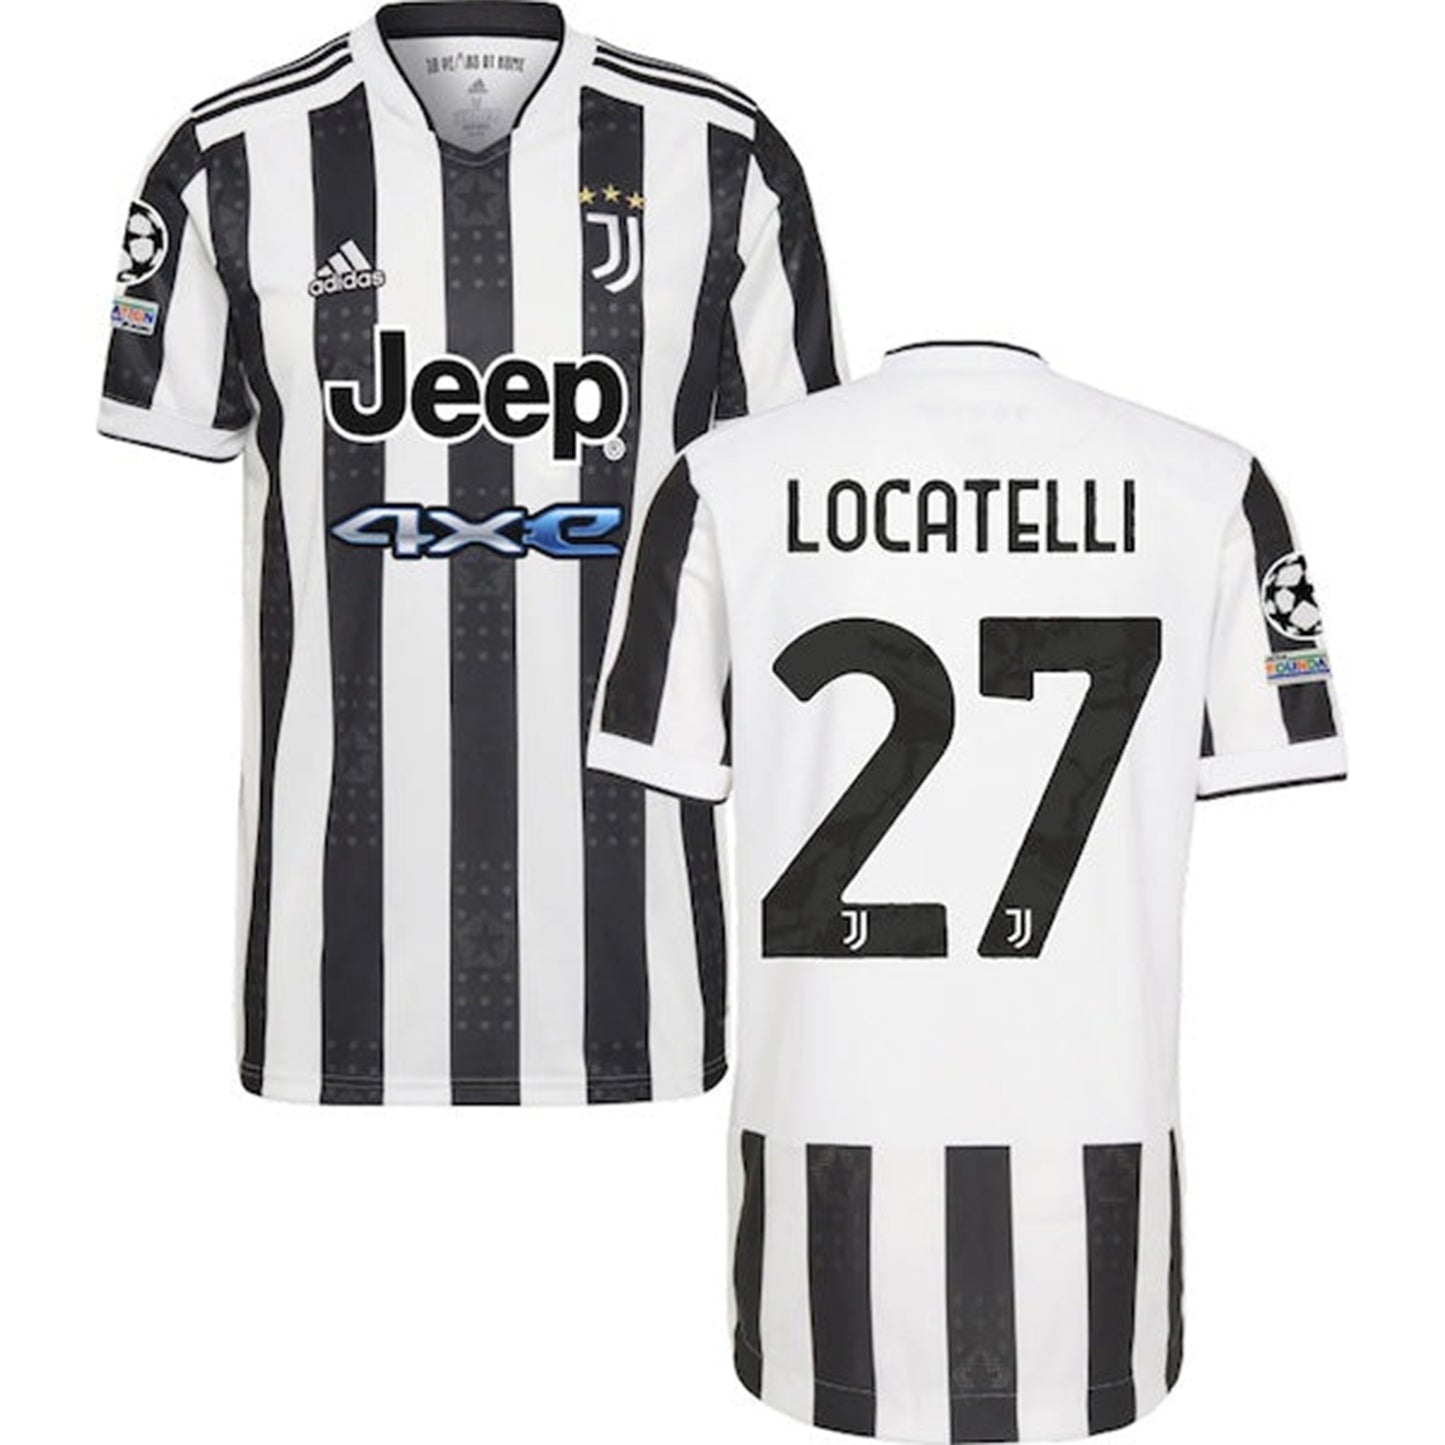 Manuel Locatelli Juventus 27 Jersey